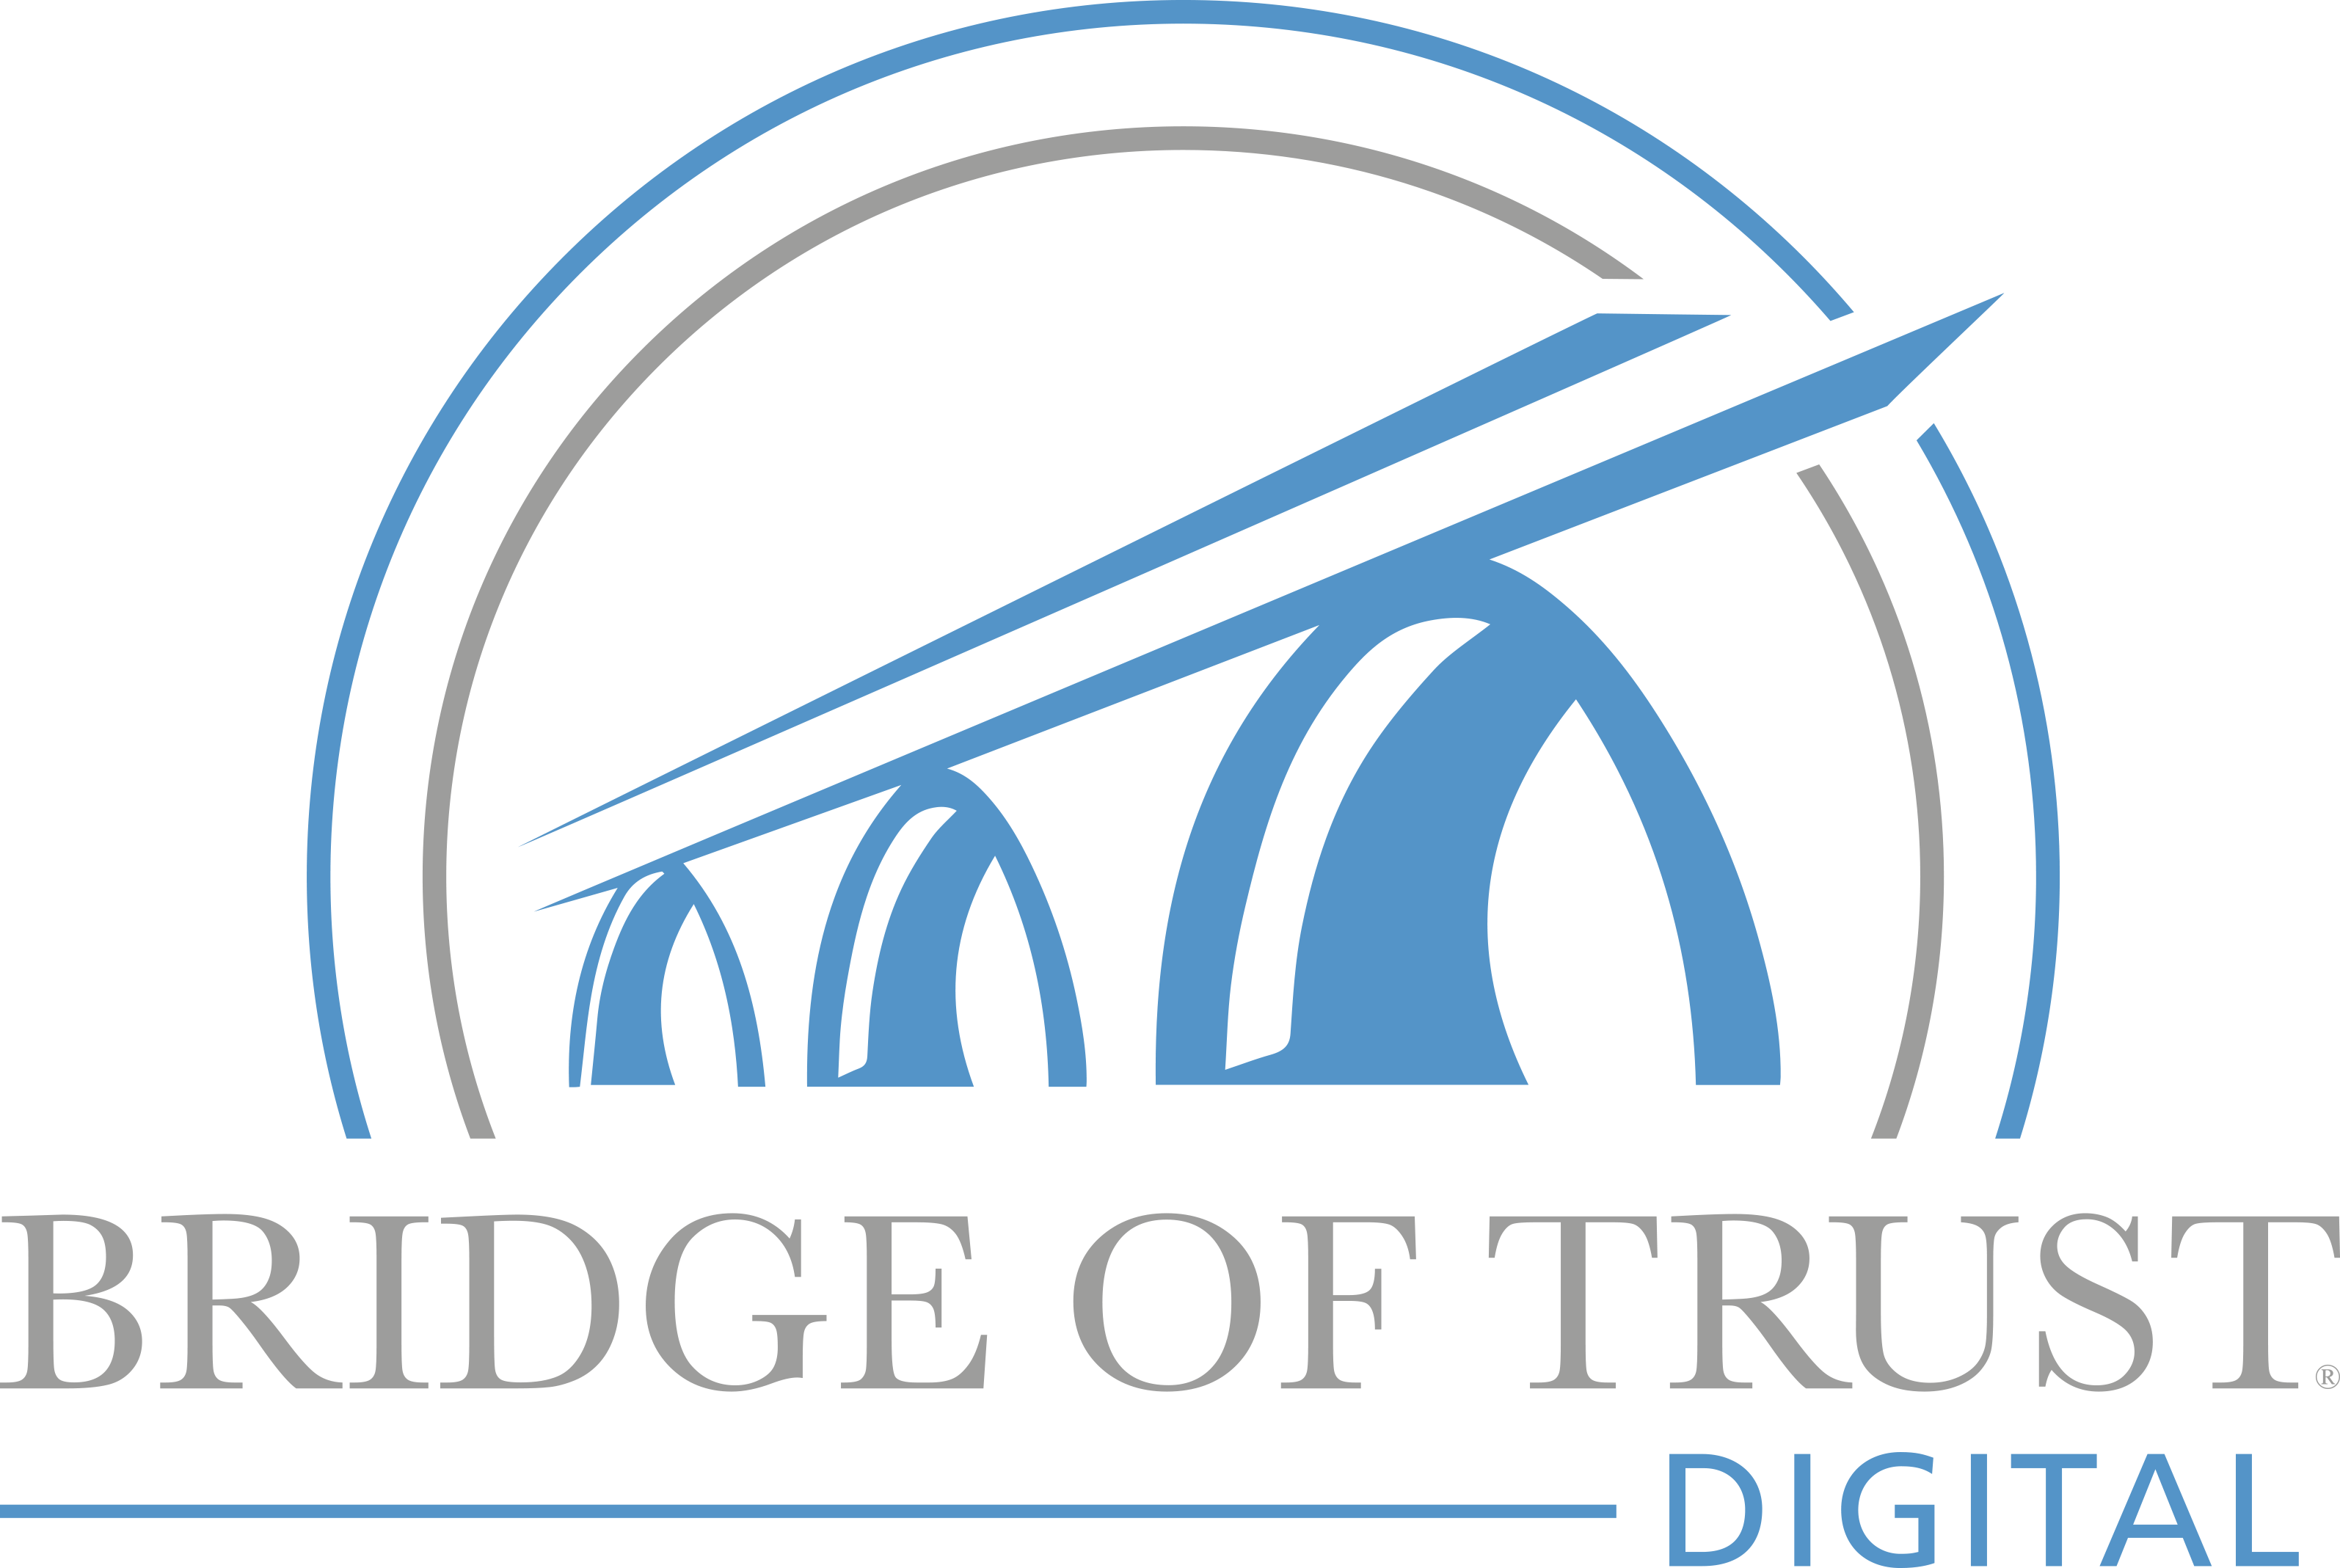 Bridge of Trust DIGITAL